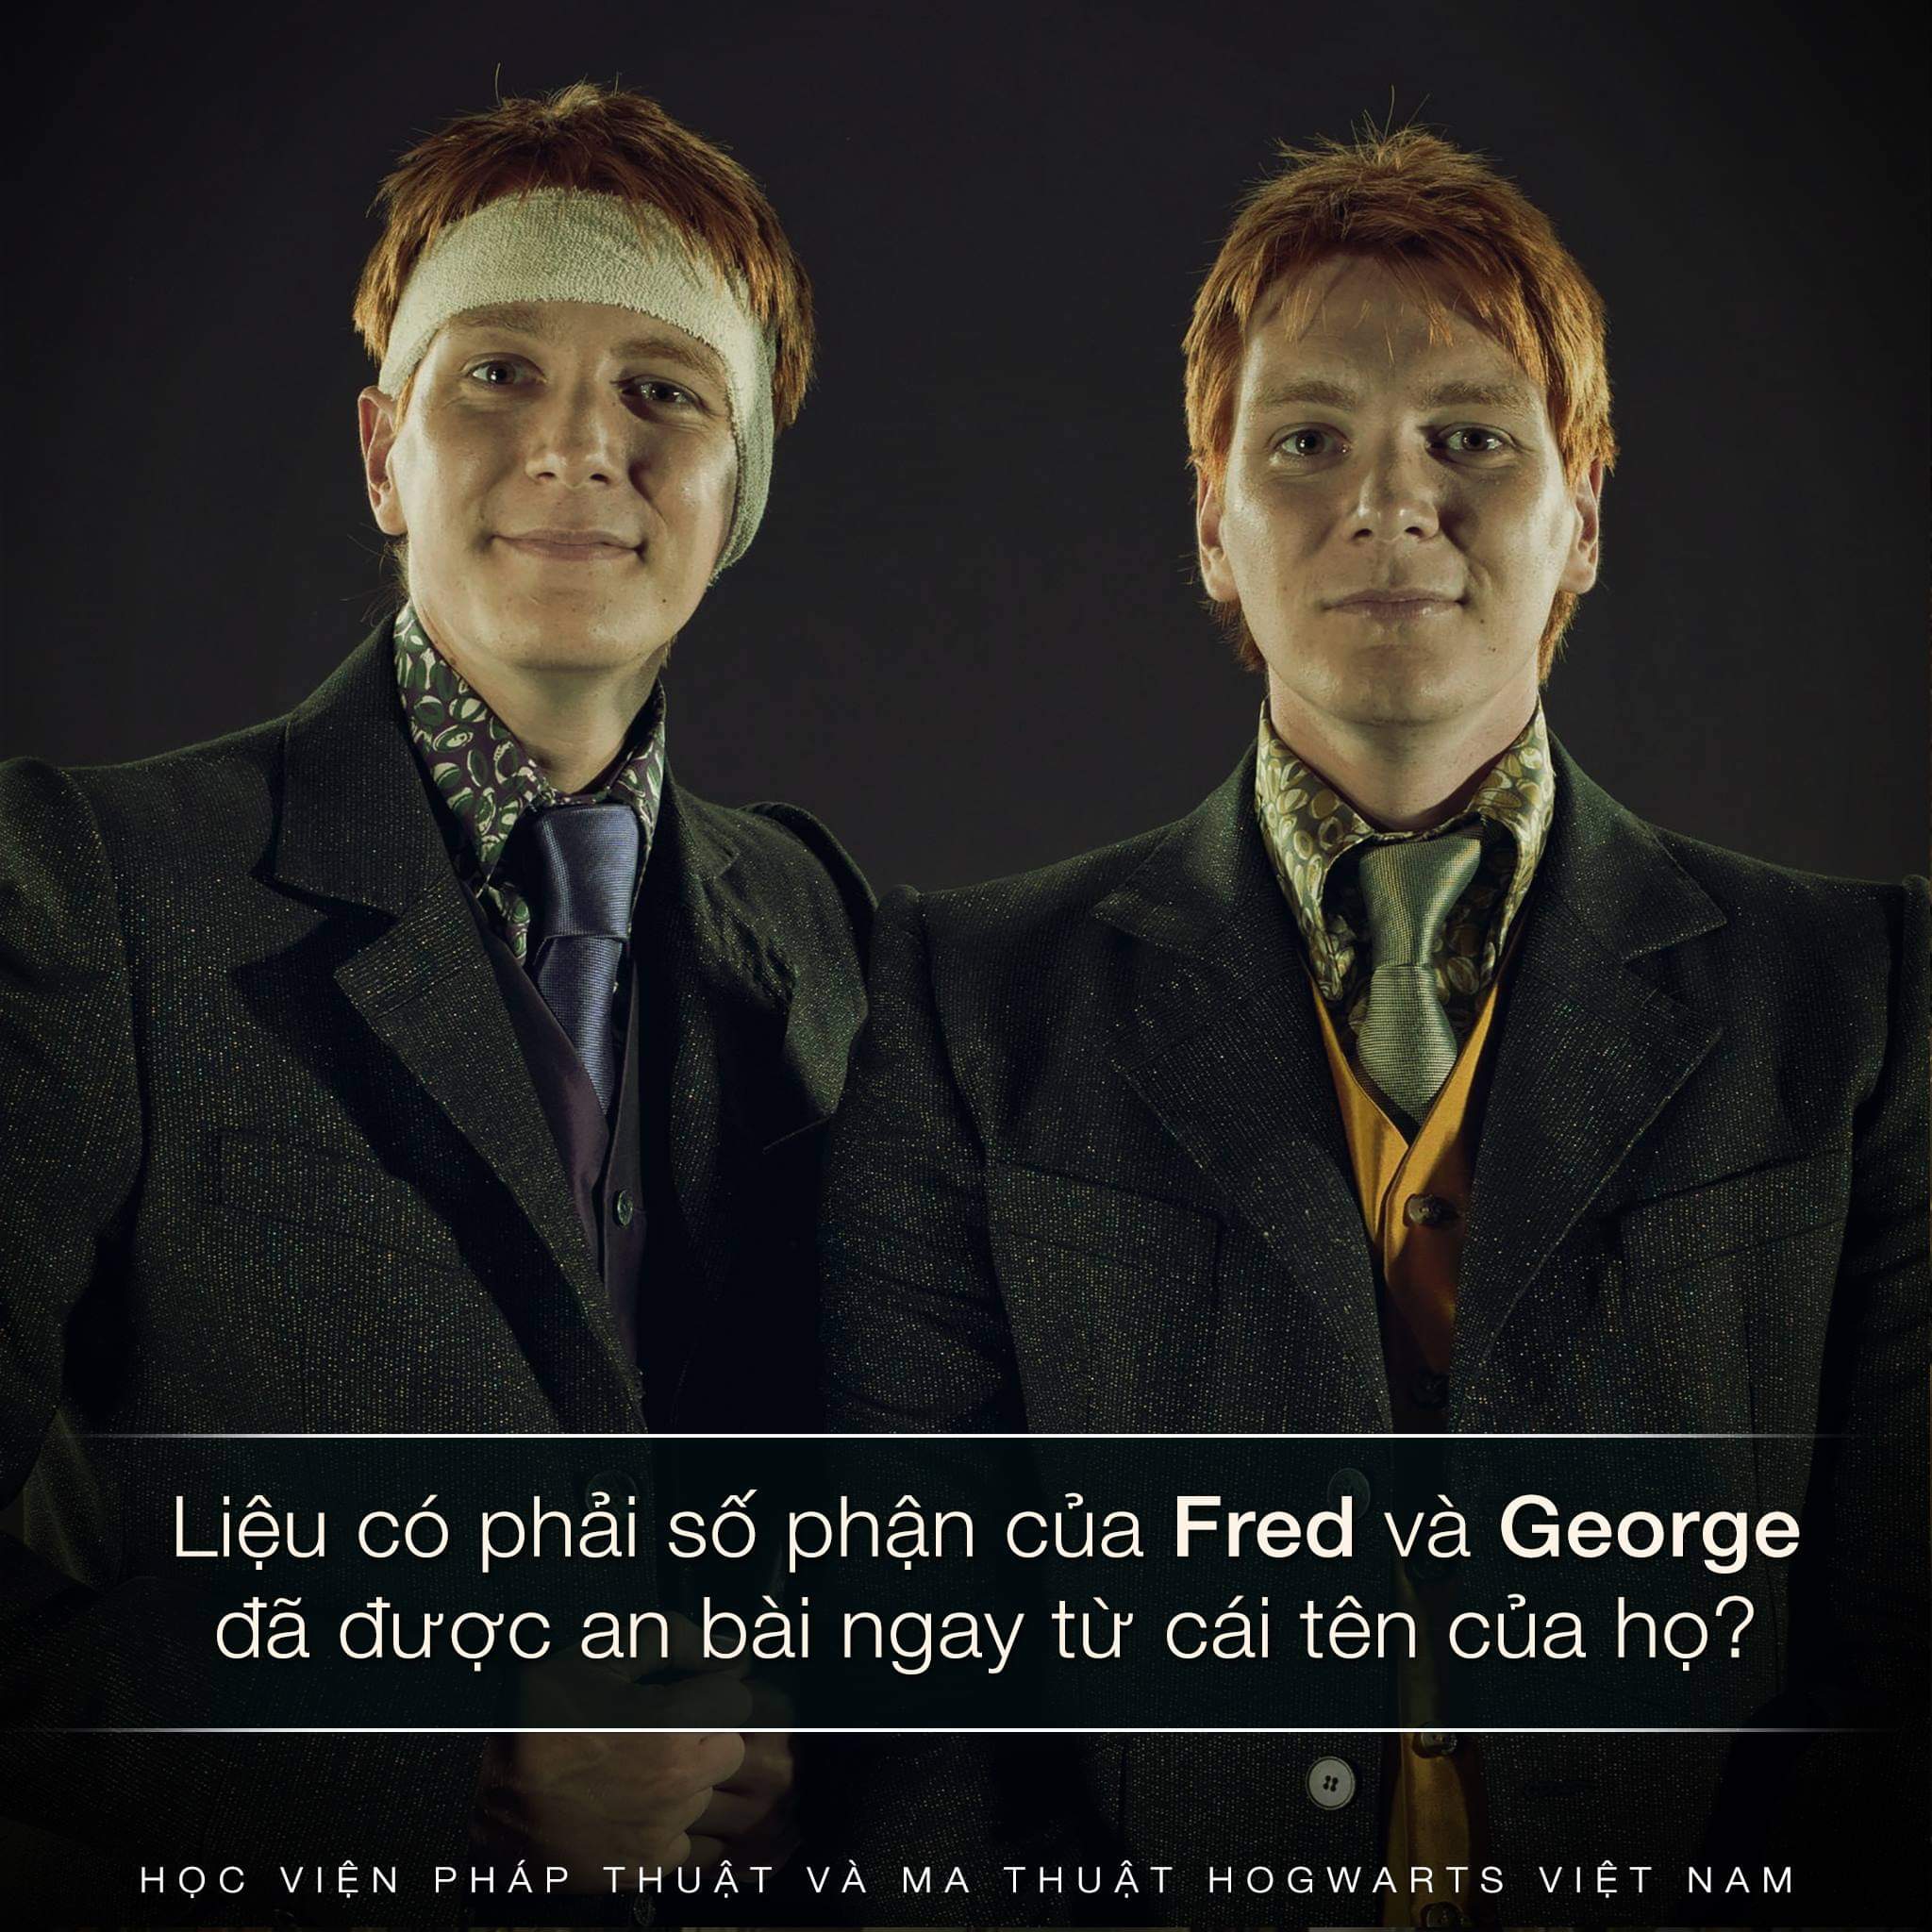 Số phận của Fred và George đã được định sẵn